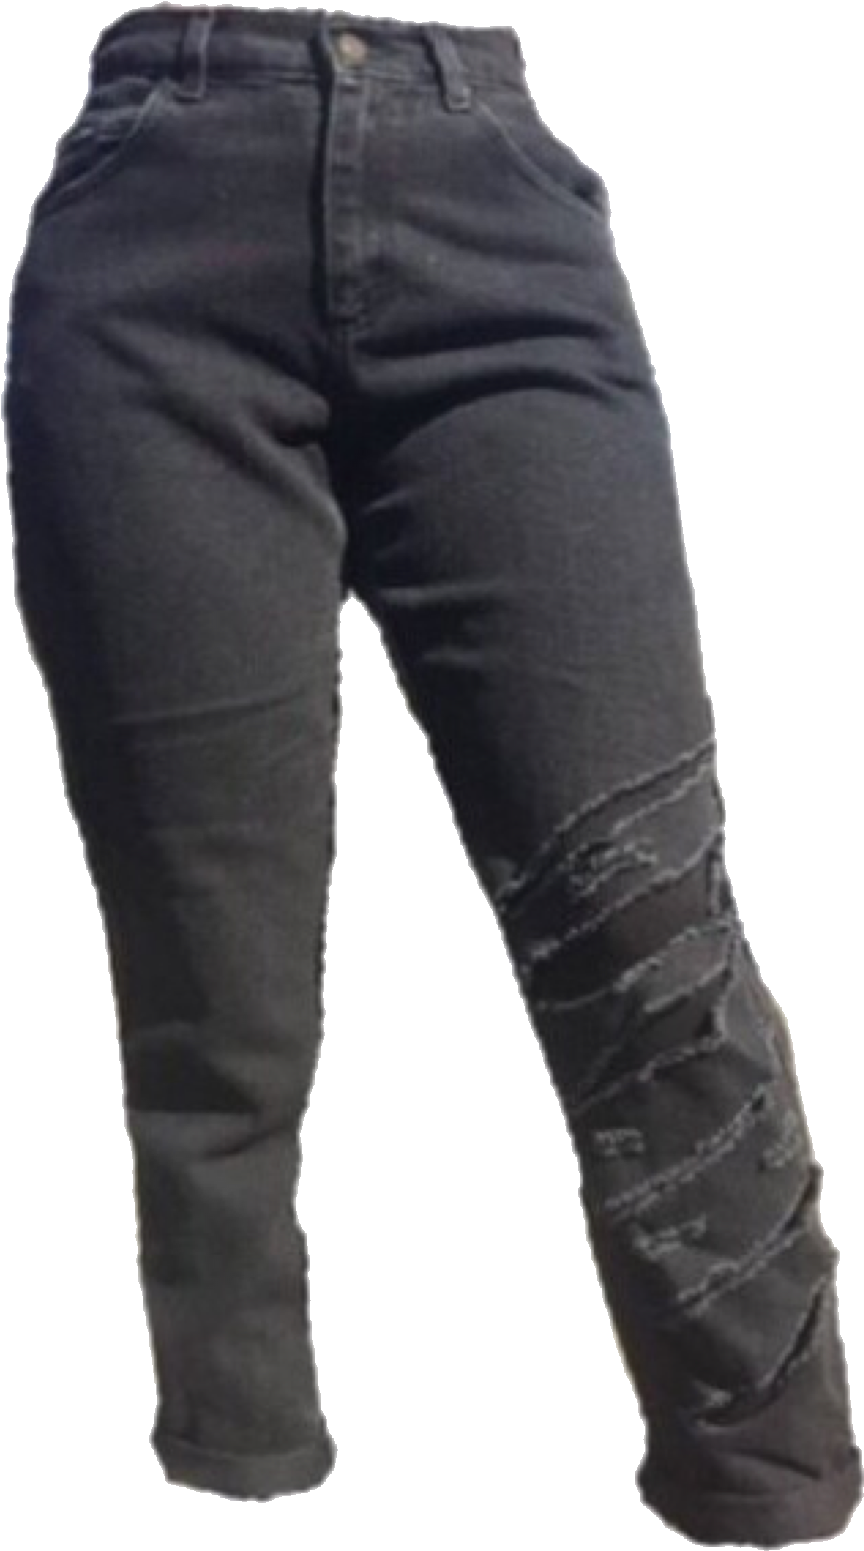 Black Denim Jeans Standing Position PNG image